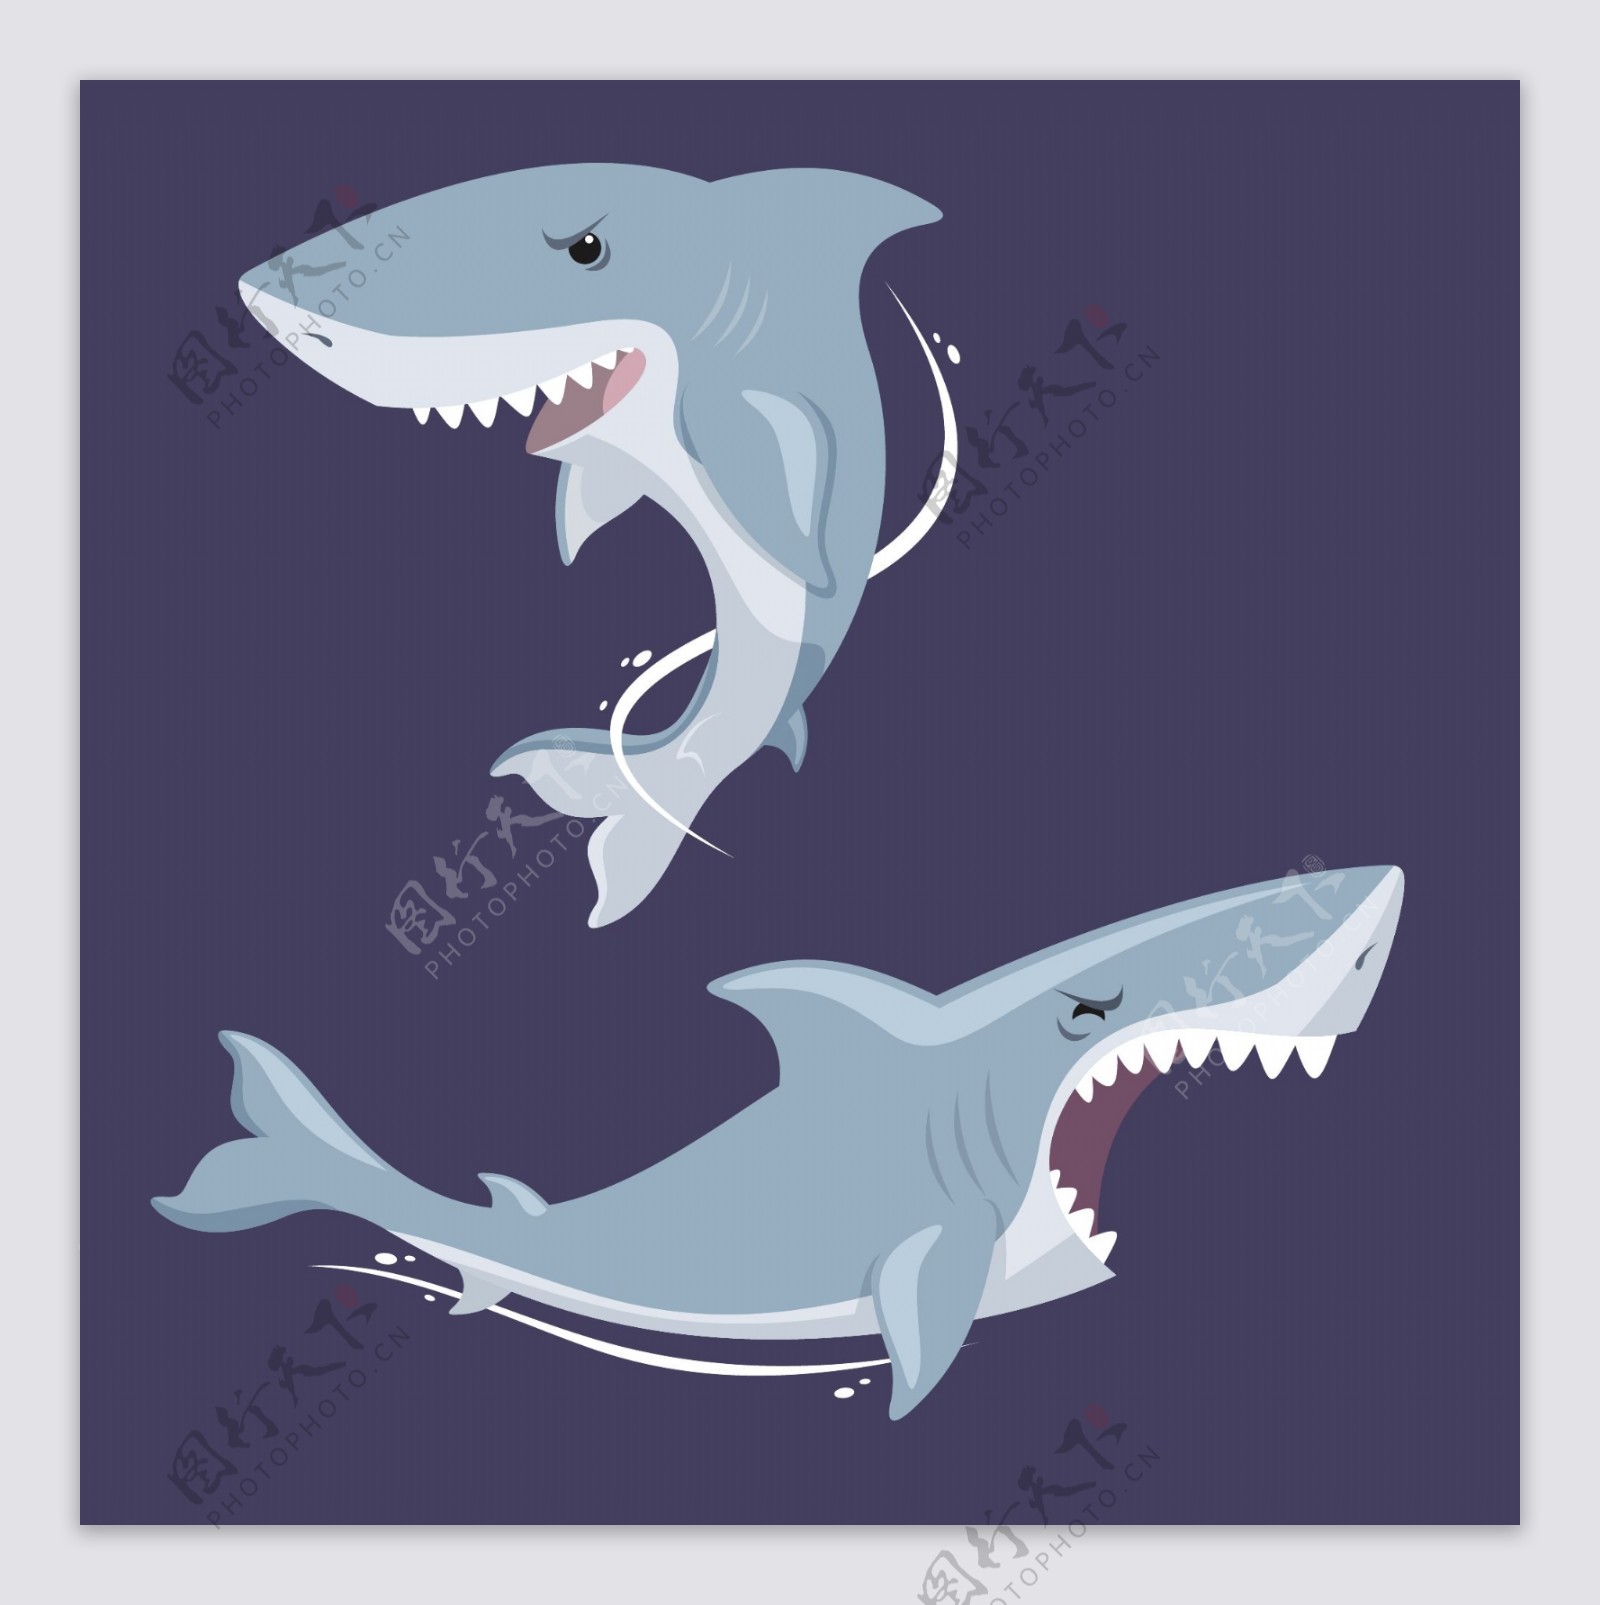 蓝色背景两只锋利牙齿的大鲨鱼